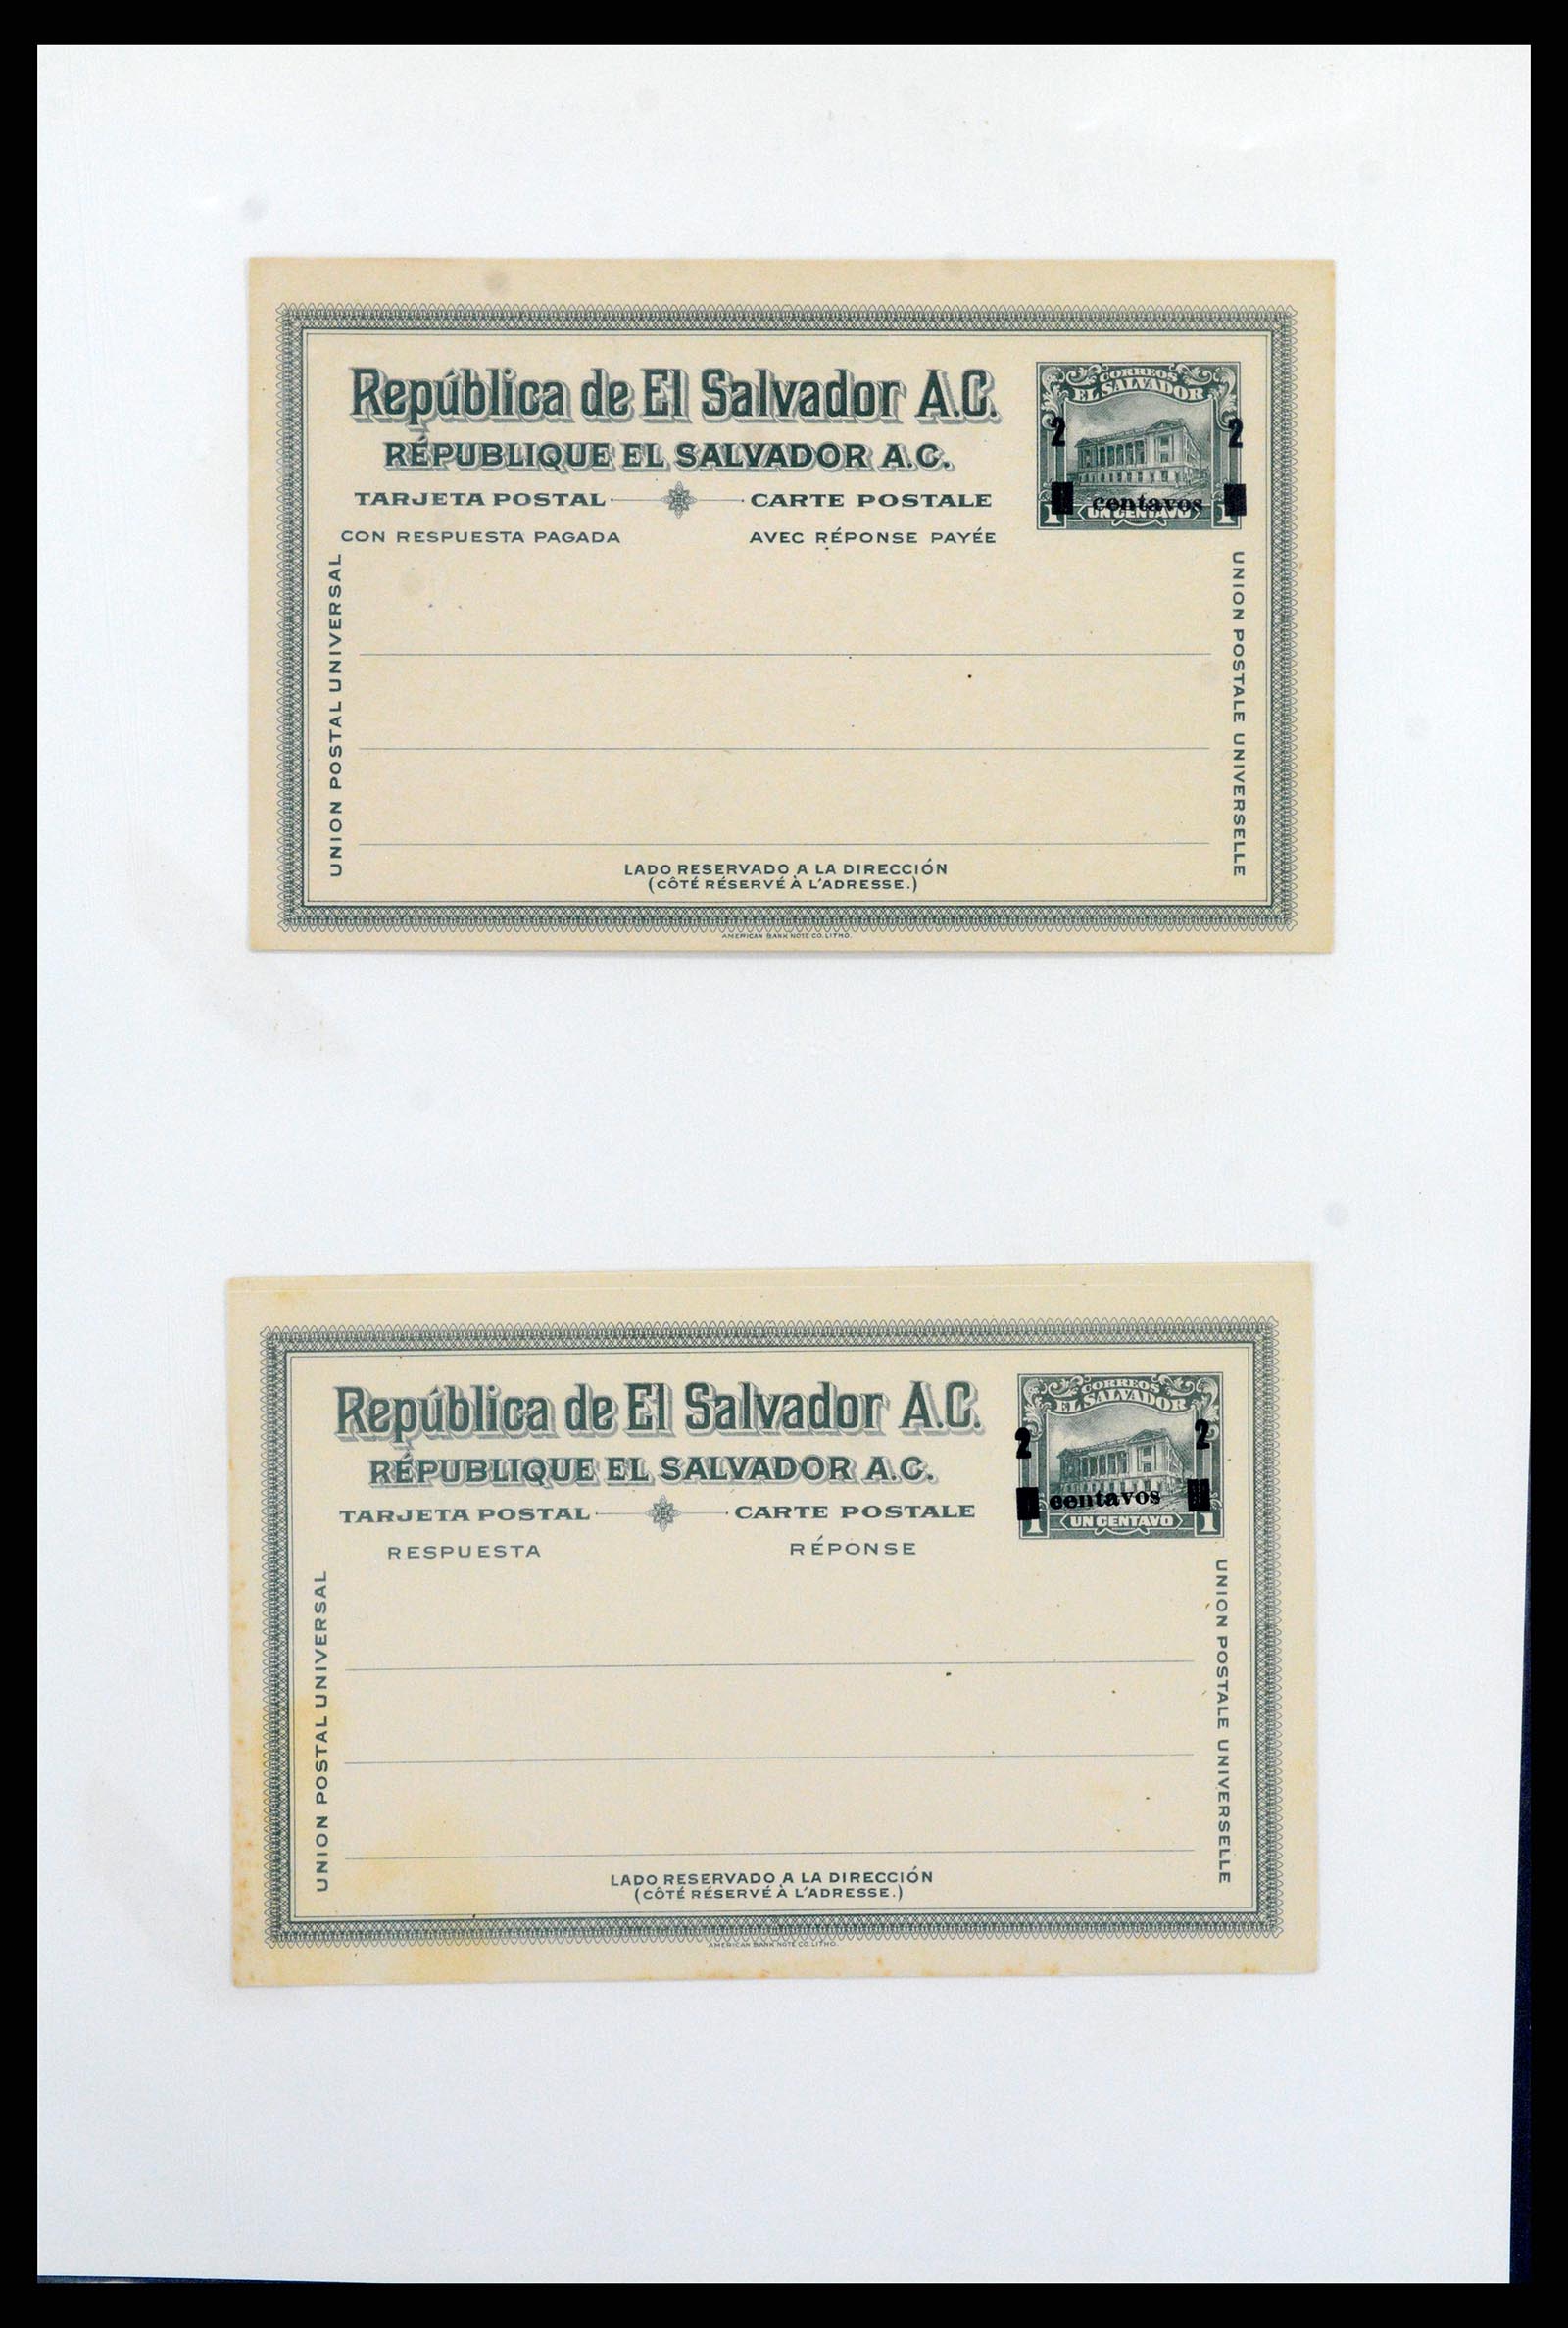 37412 026 - Stamp collection 37412 El Salvador trains 1891-1930.